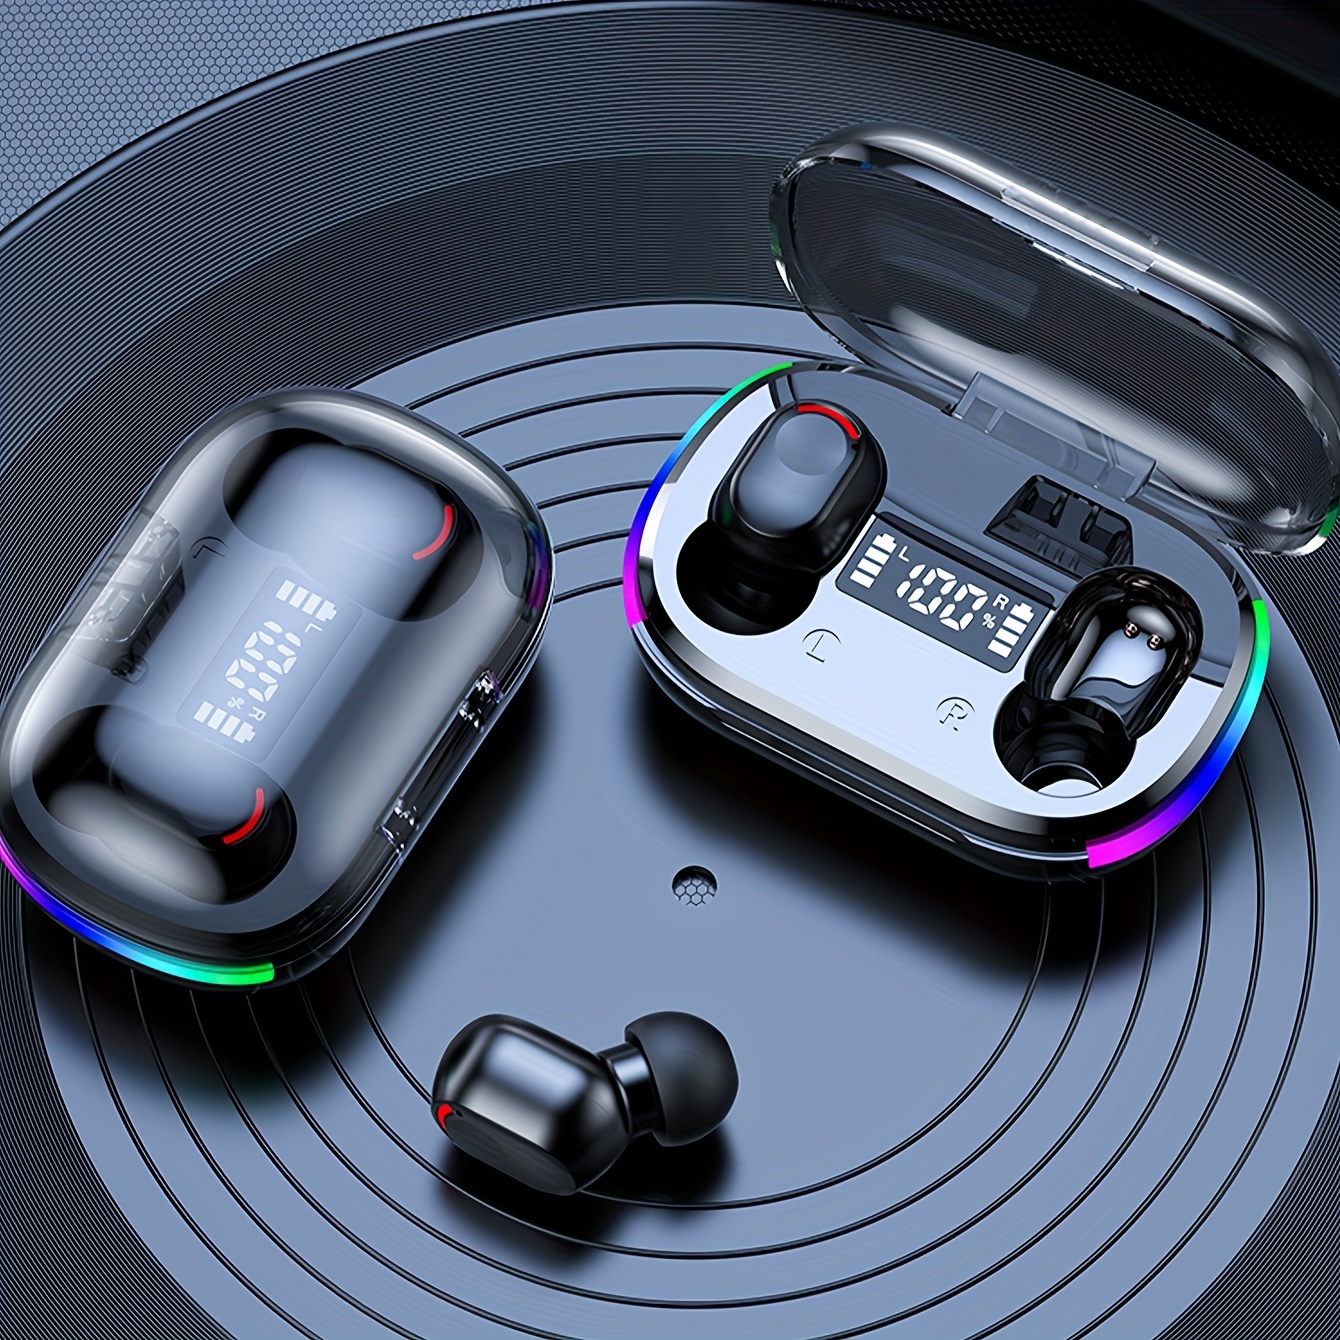 P9 Pro Max auriculares inalámbricos con Bluetooth, auriculares estéreo con  micrófono para Iphone y Xiaomi, 5